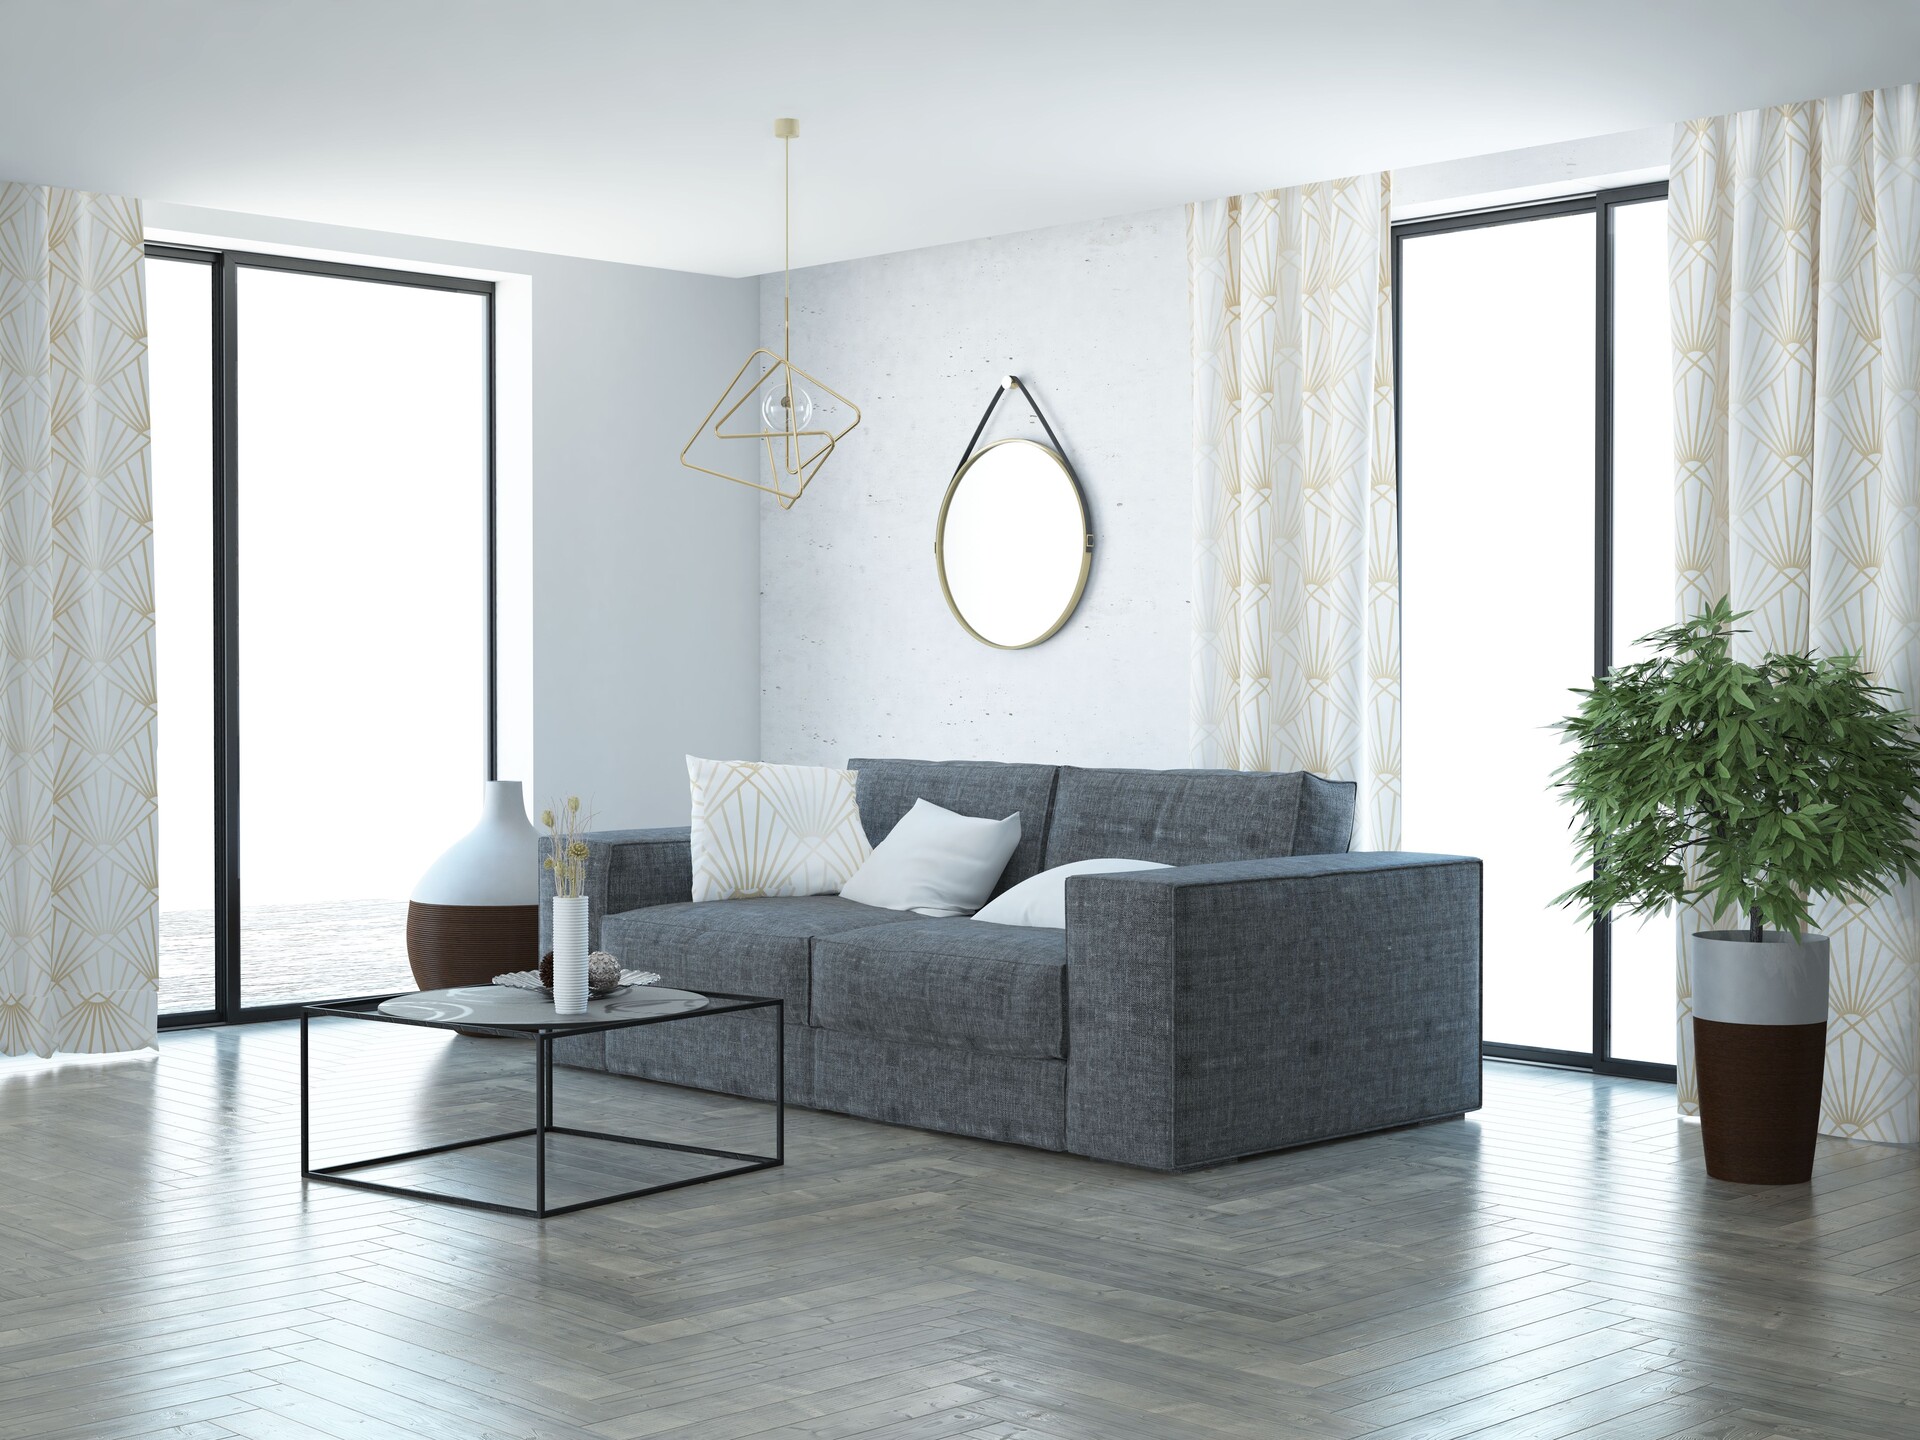 ArtStation - Luxurious modern living room